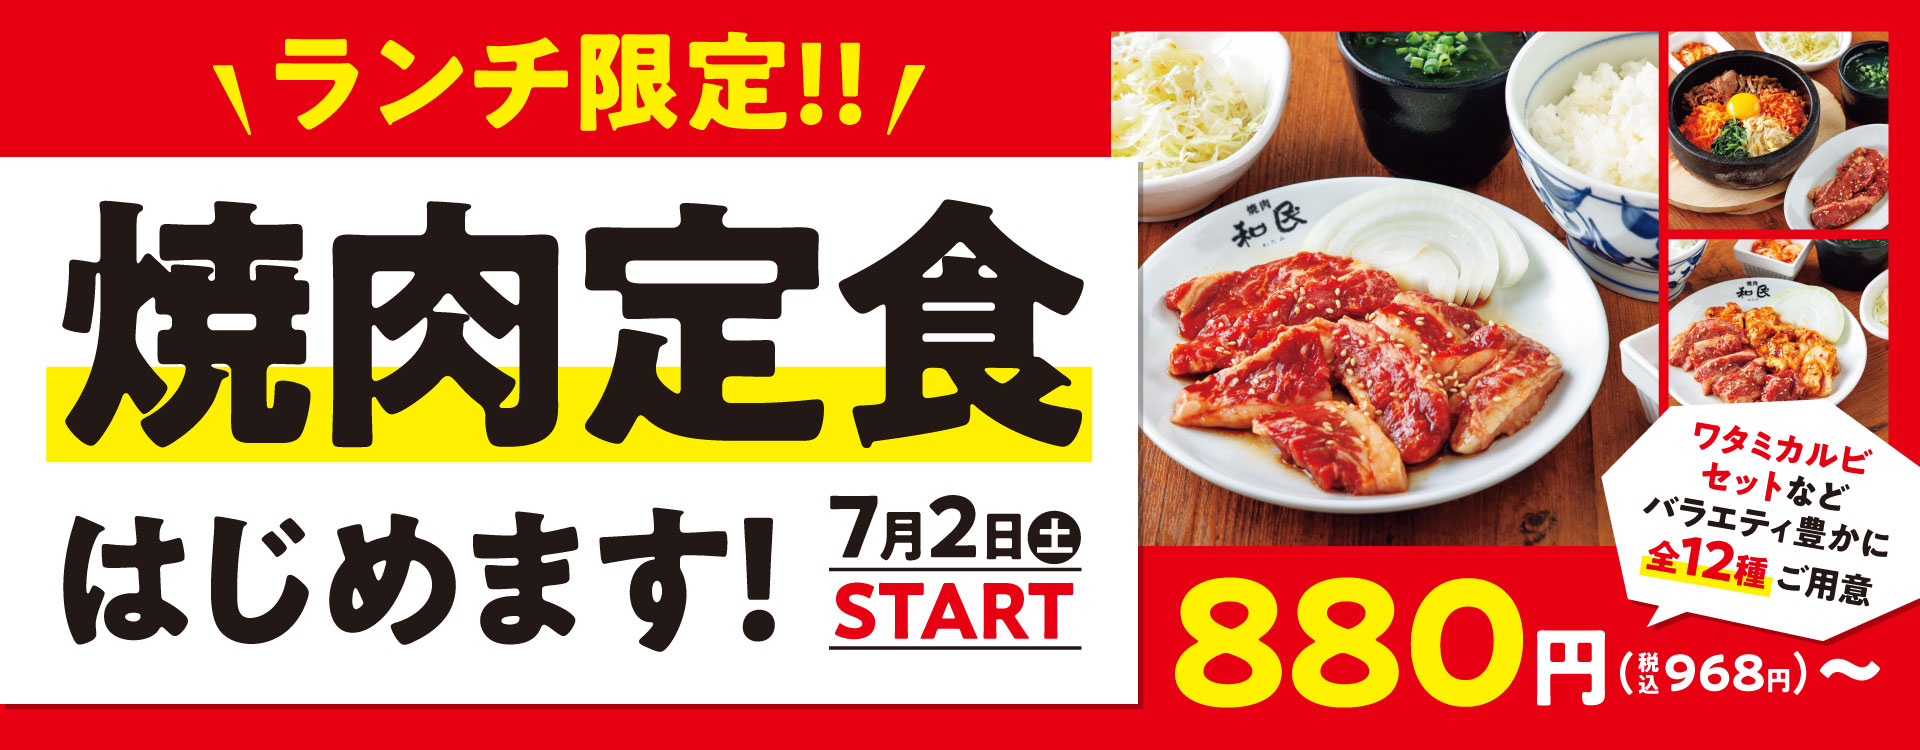 志村坂上の焼肉店「焼肉の和民」でランチにおすすめのランチ限定焼肉定食の画像